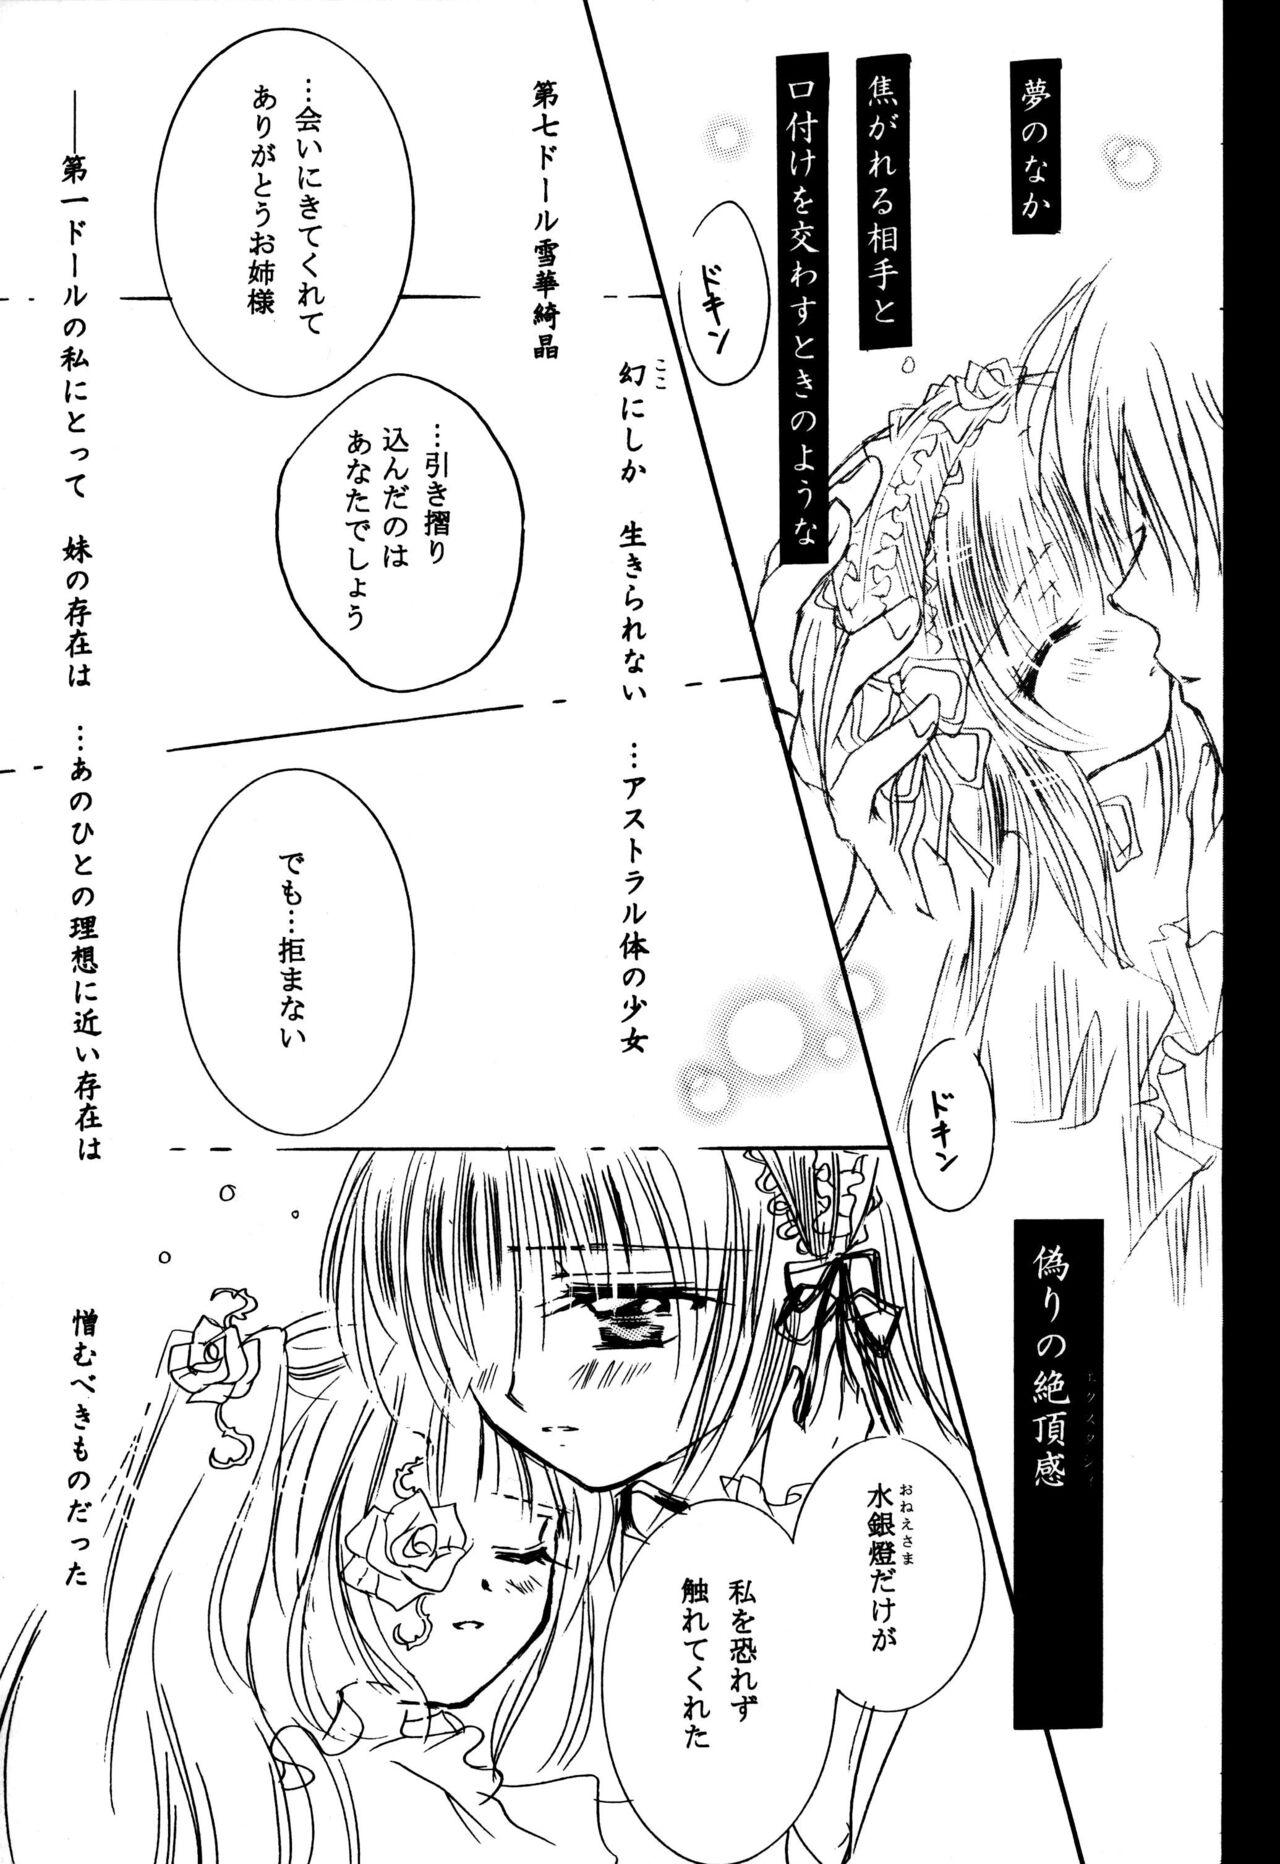 Spanking Sasagerarenai Ririi no Uta - Rozen maiden Hot Girl Fuck - Page 11